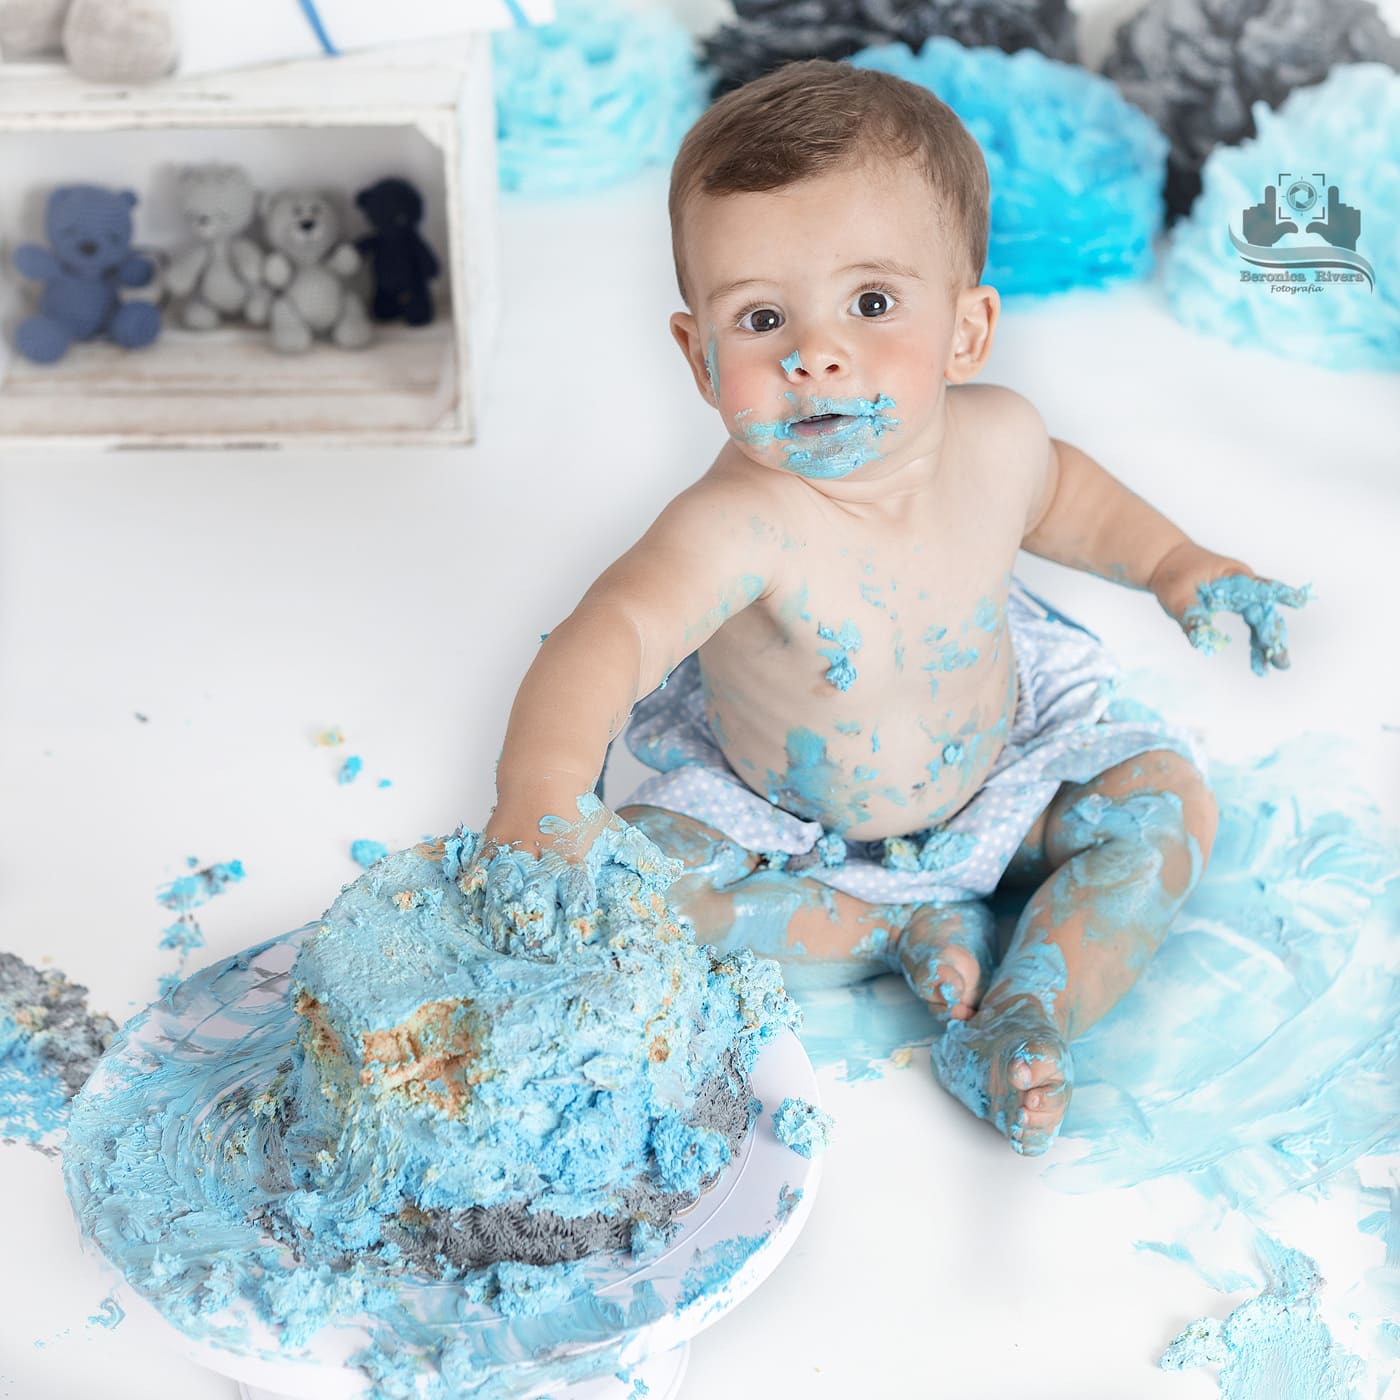 Fotografía en Fuengirola - Bebé de 1 año jugando con un pastel